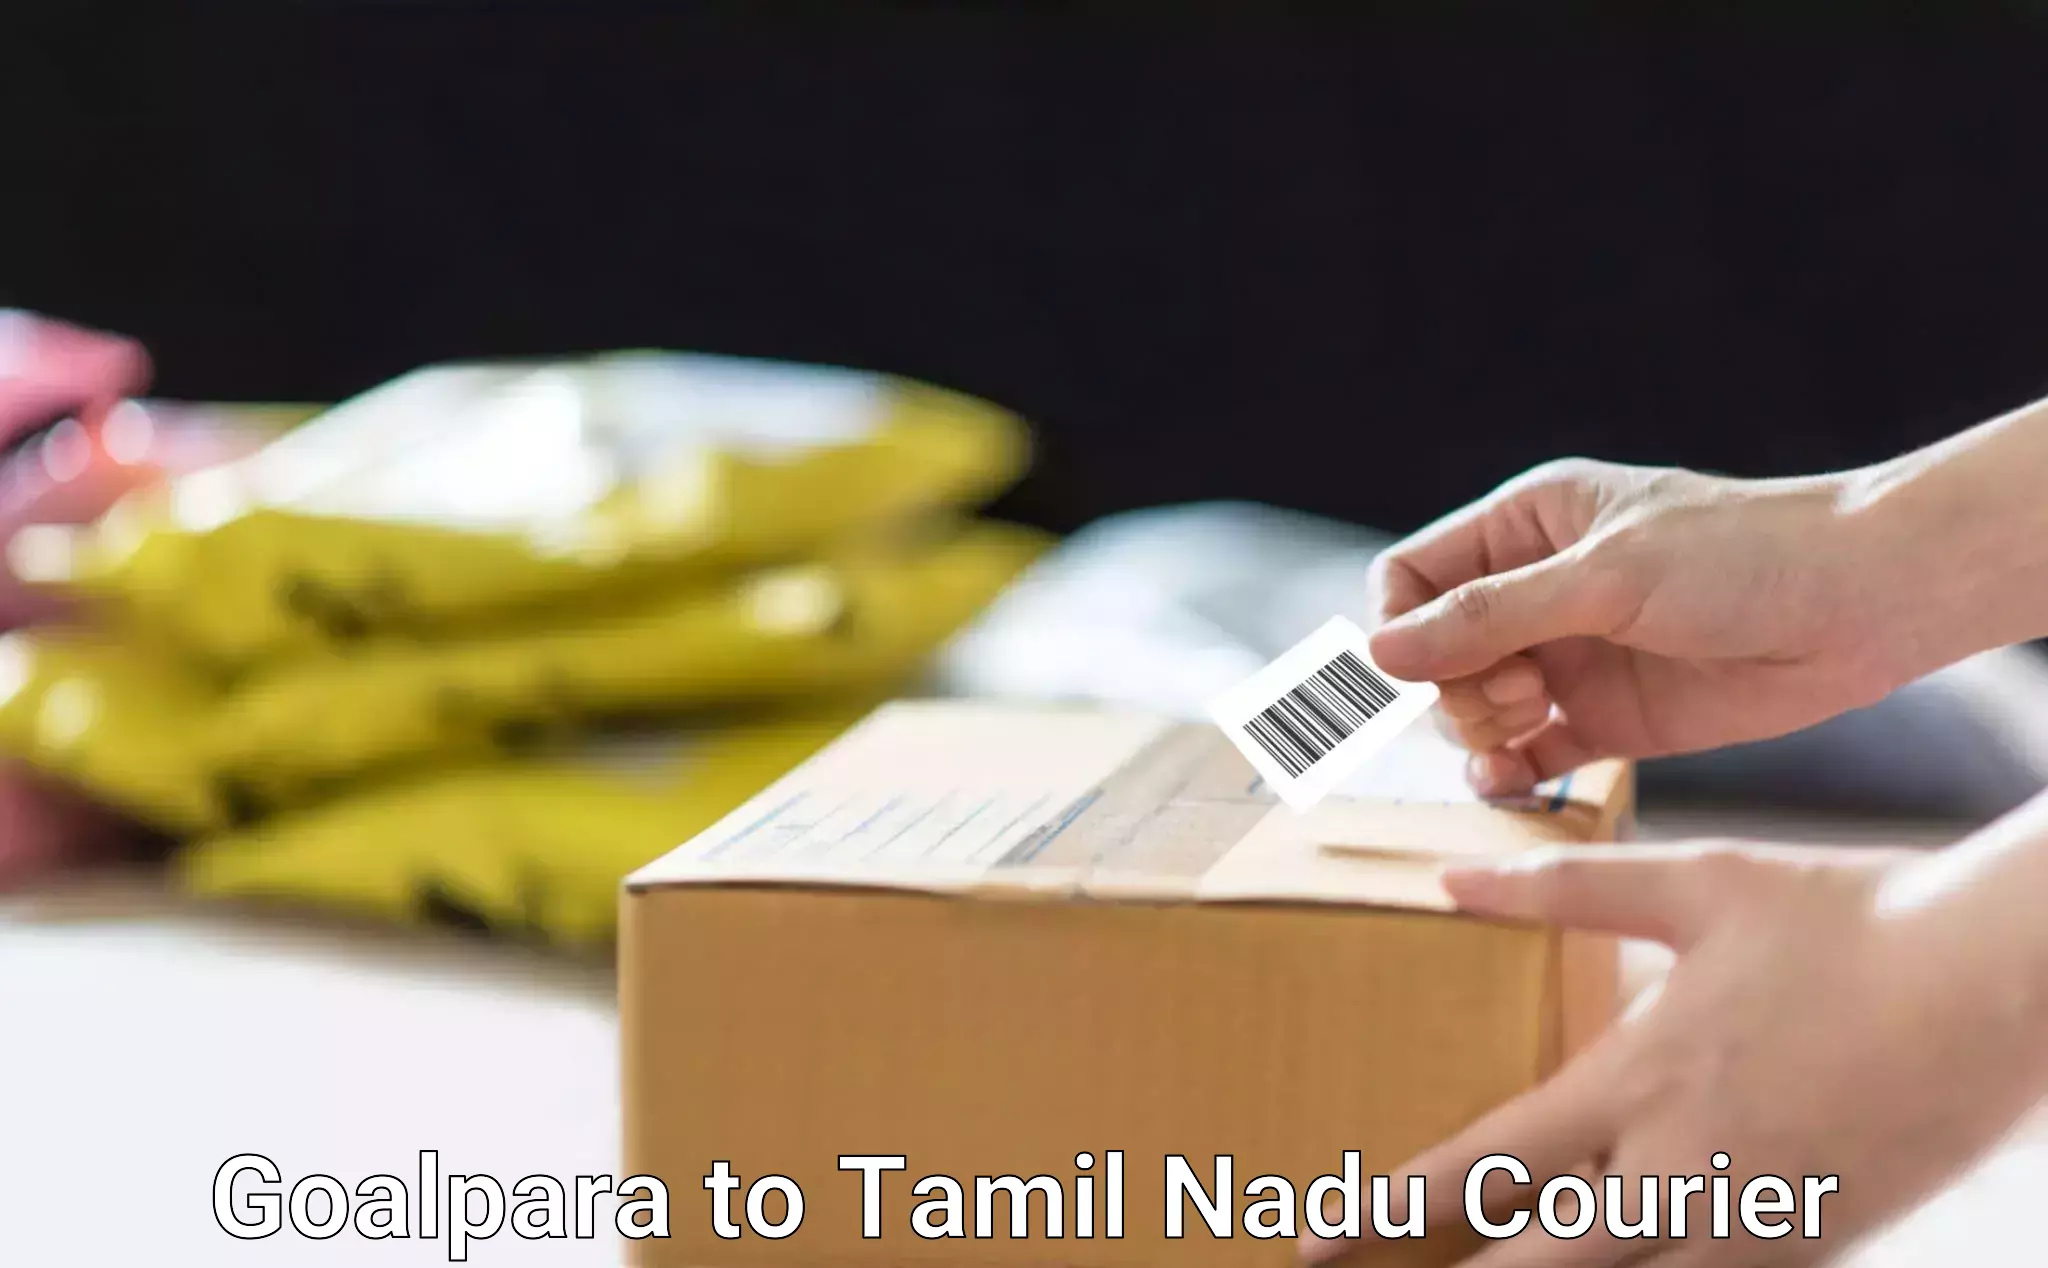 Nationwide courier service Goalpara to IIIT Tiruchirappalli